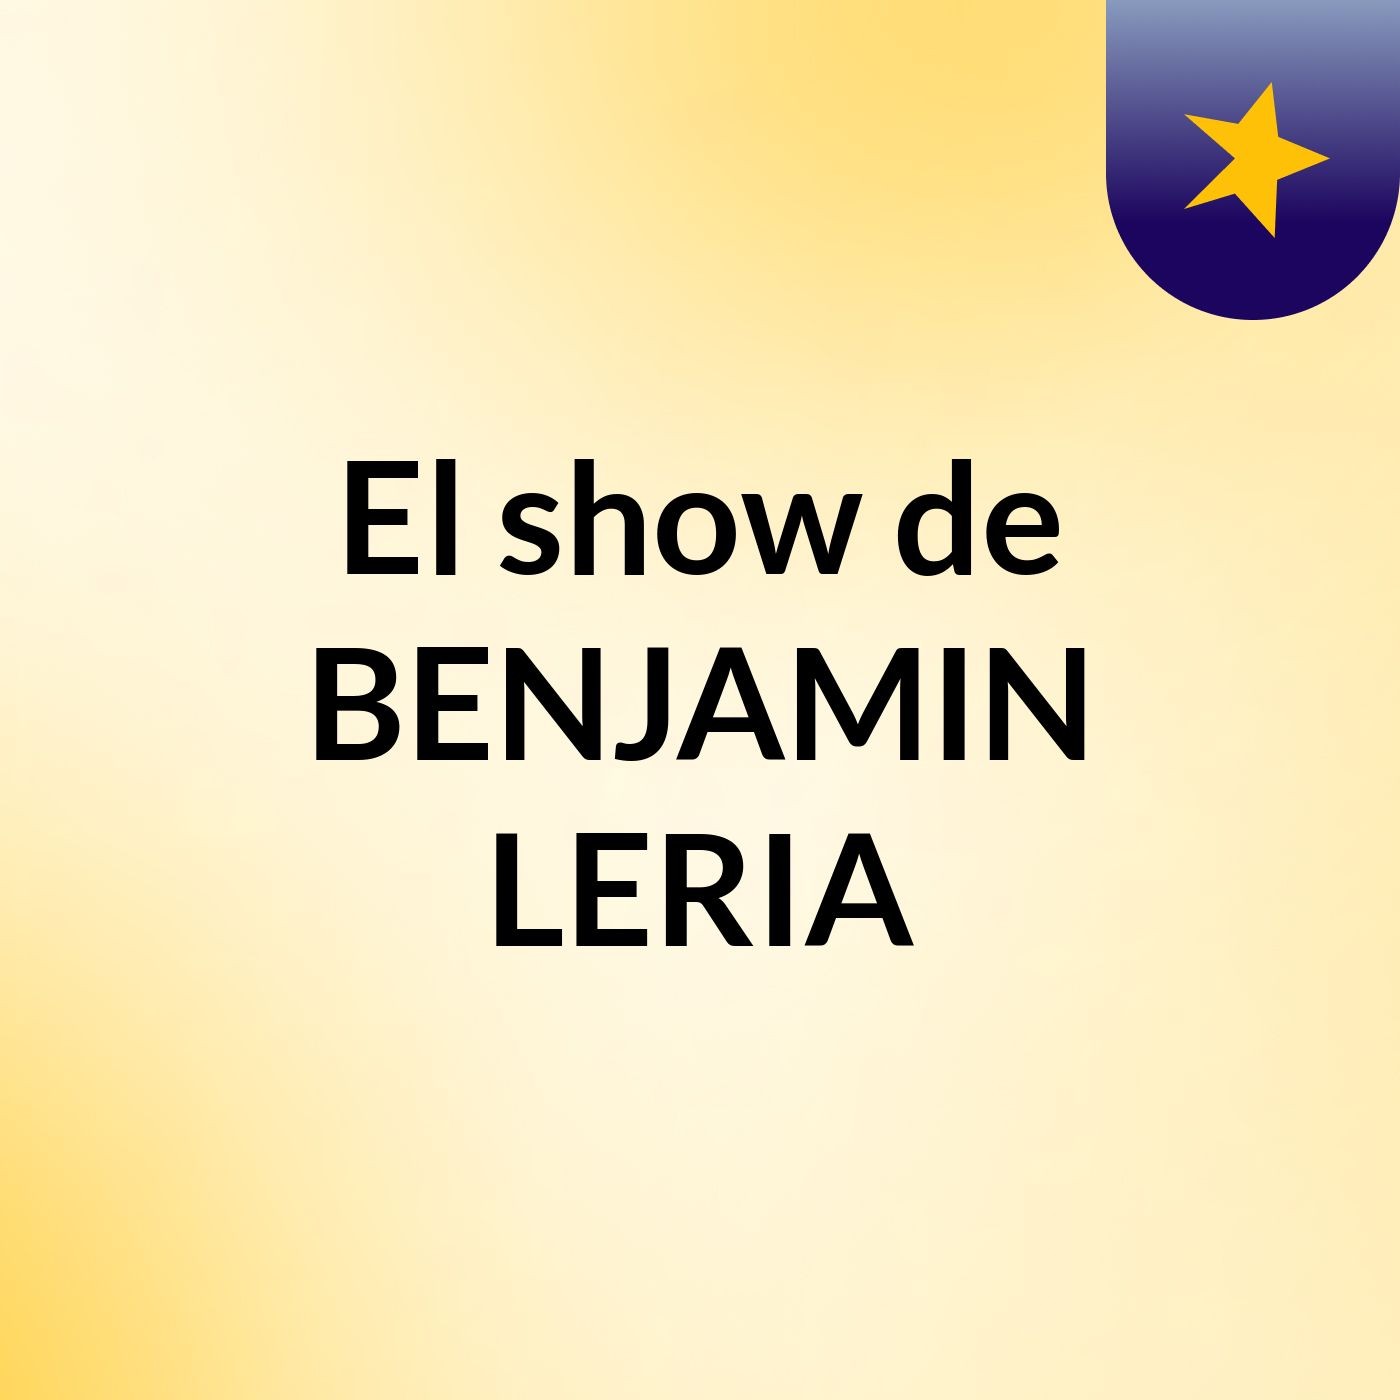 Episodio 11 - El show de BENJAMIN LERIA